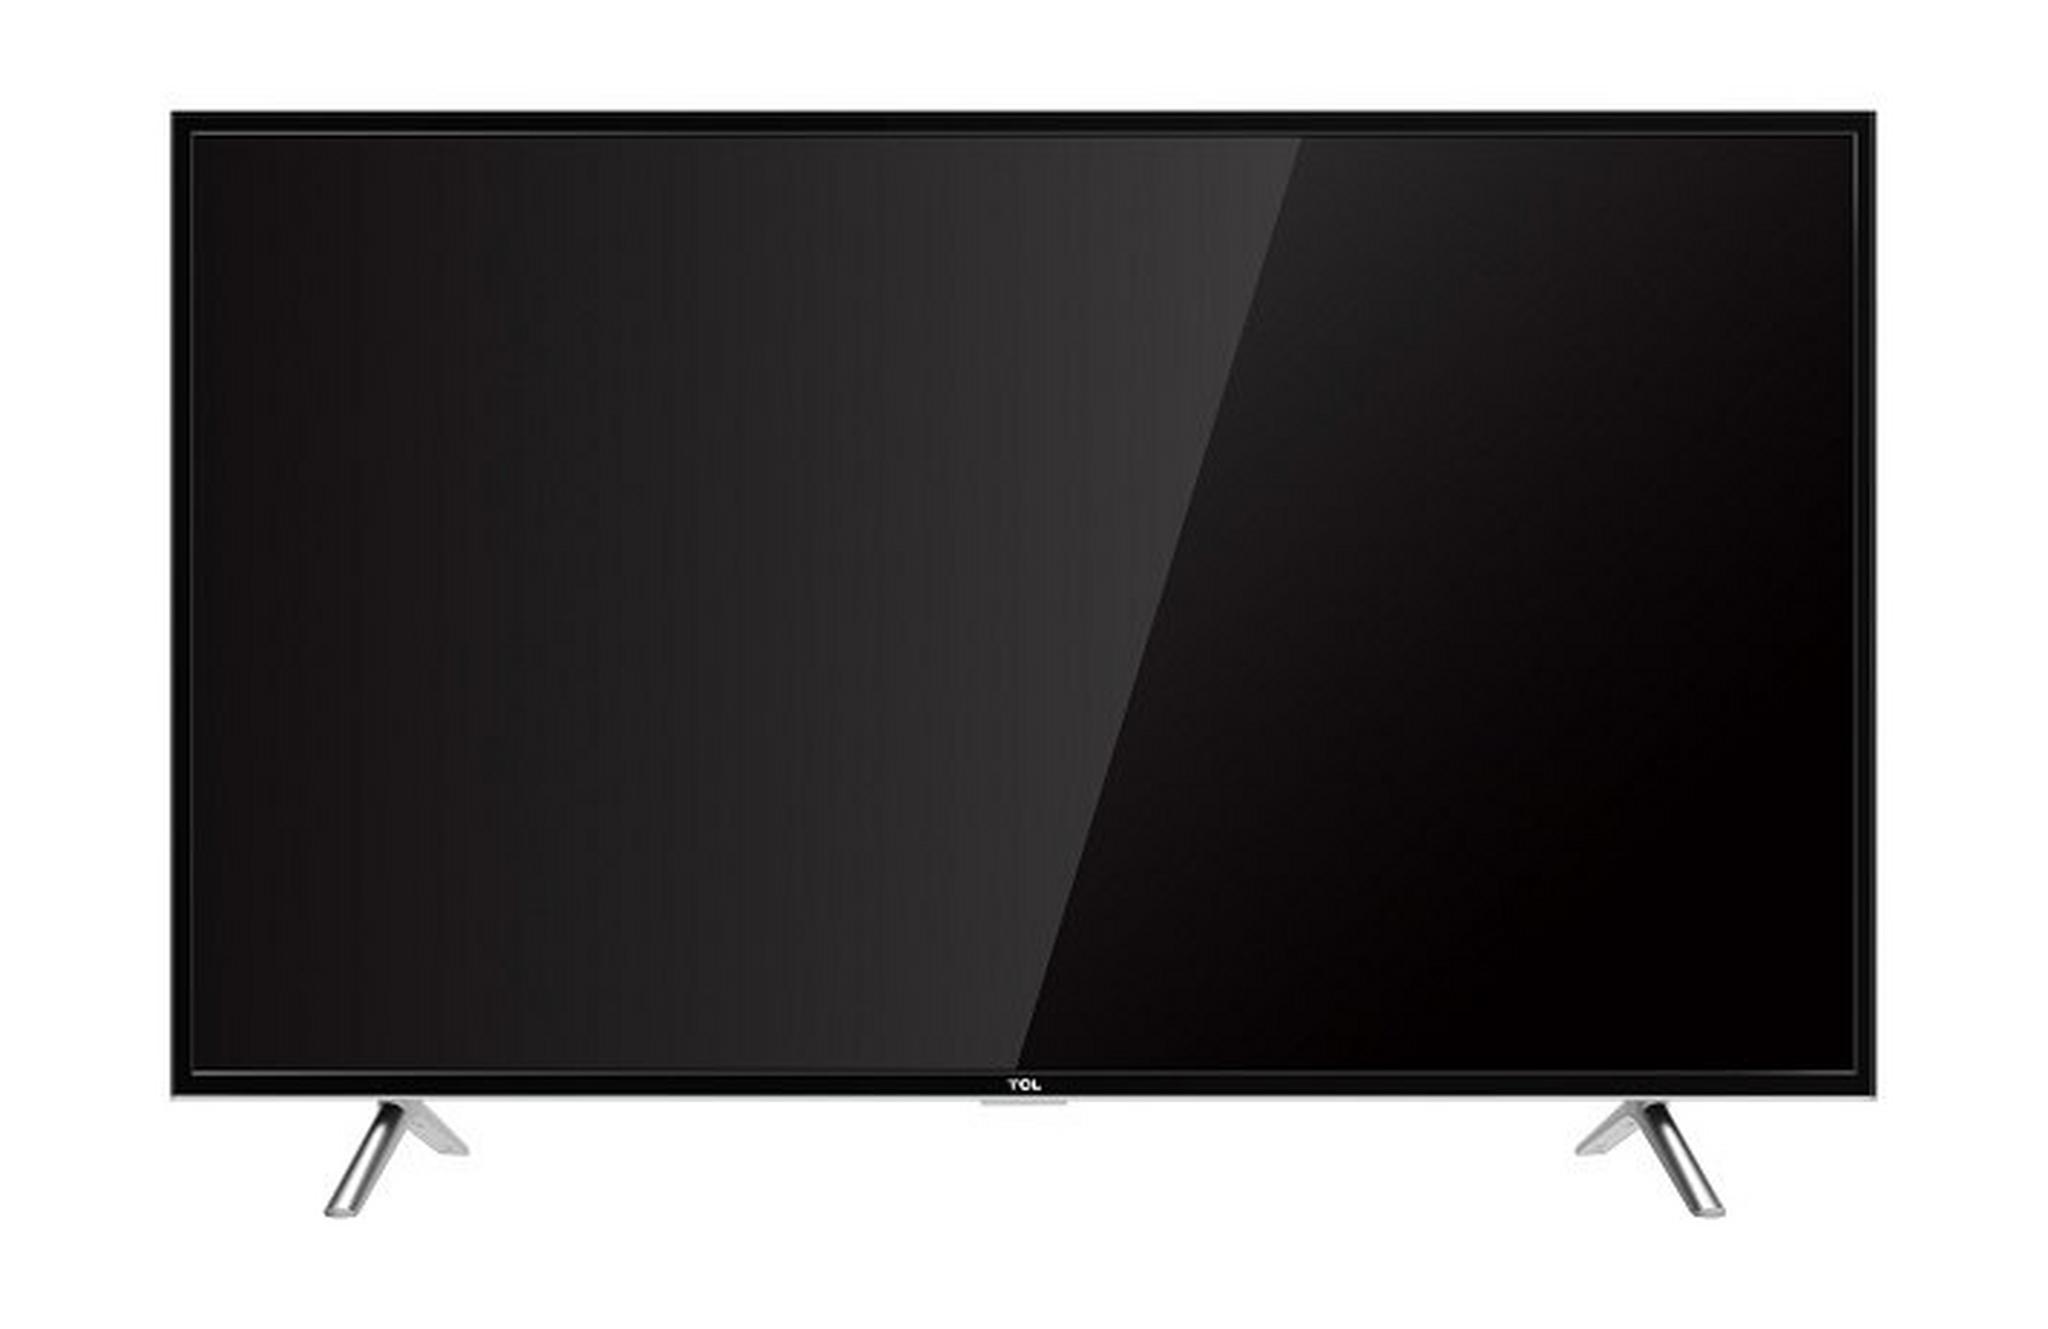 TCL 49 inch Full HD Smart LED TV - L49D2900